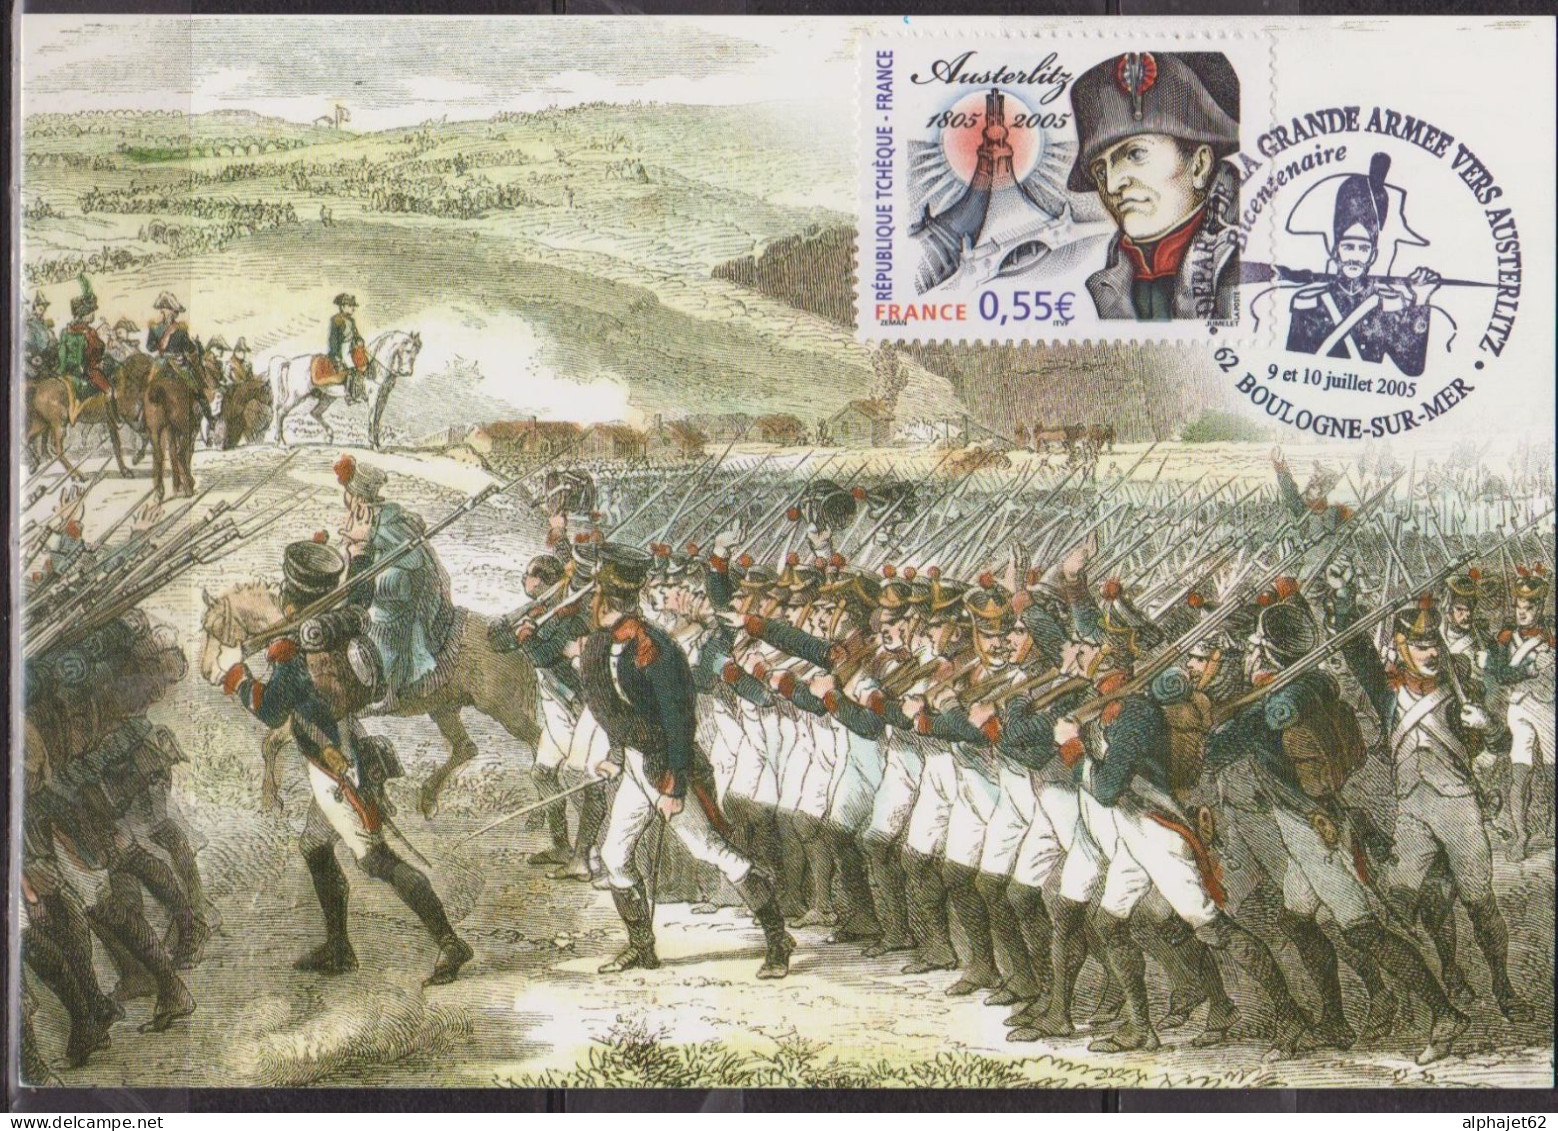 Napoléon - Austerlitz - Camp De Boulogne - FRANCE - Carte Maximum - Grande Armée - Boulogne Sur Mer - N° 3782 - 2005 - Napoleón